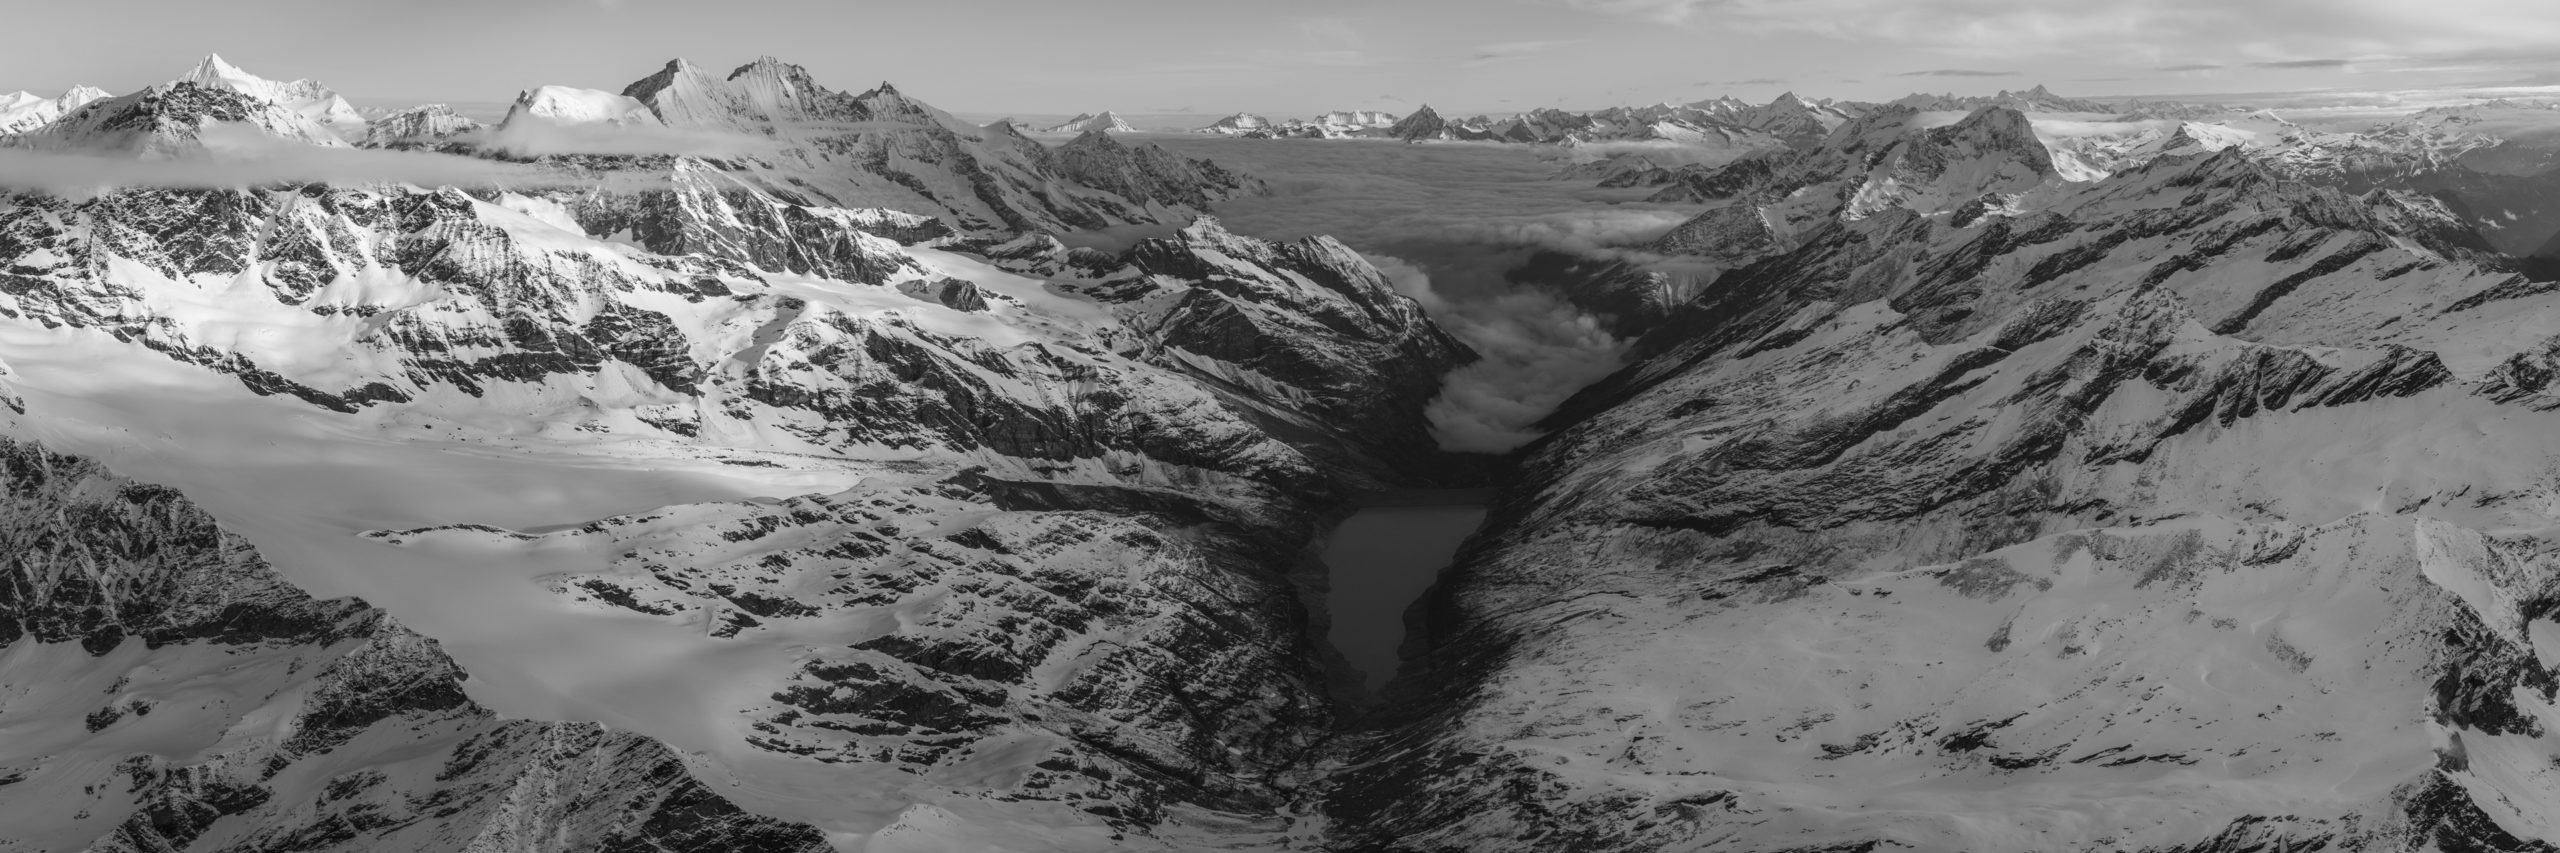 Schwarz-Weiß-Panorama der Nordalpen und der Schweizer Berge aus saas fee